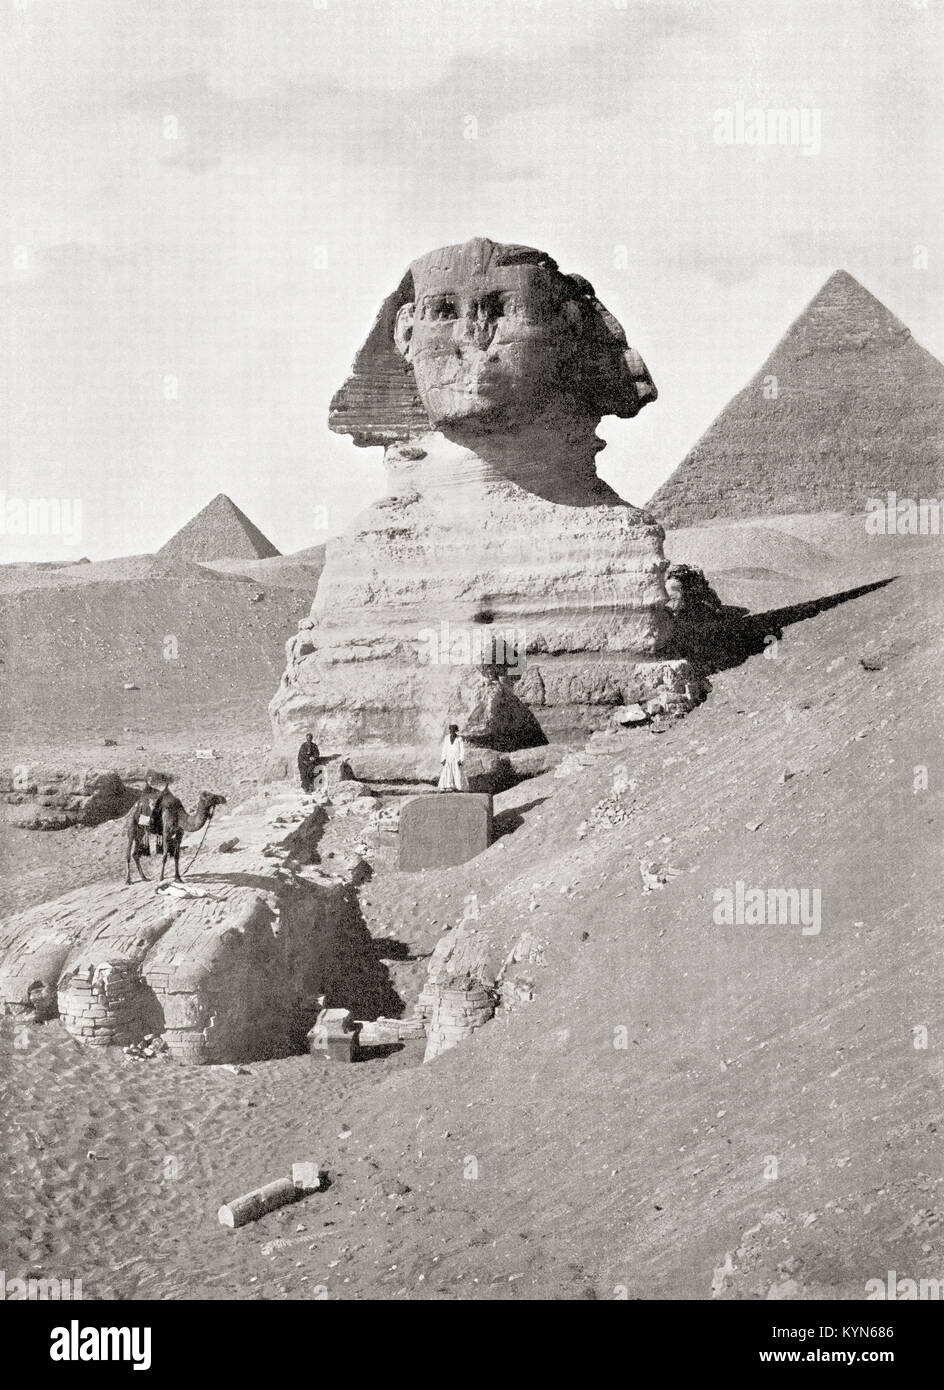 Die Große Sphinx in Gizeh Pyramiden, Giza Plateau, Kairo, Ägypten. Eine massive Skulptur im Allgemeinen angenommen, die den Pharao Khafre zu vertreten. Hier sind die Beschäftigten abräumen Sand, die den Sockel des Denkmals drosseln. Von den Wundern der Welt, veröffentlicht C 1920. Stockfoto